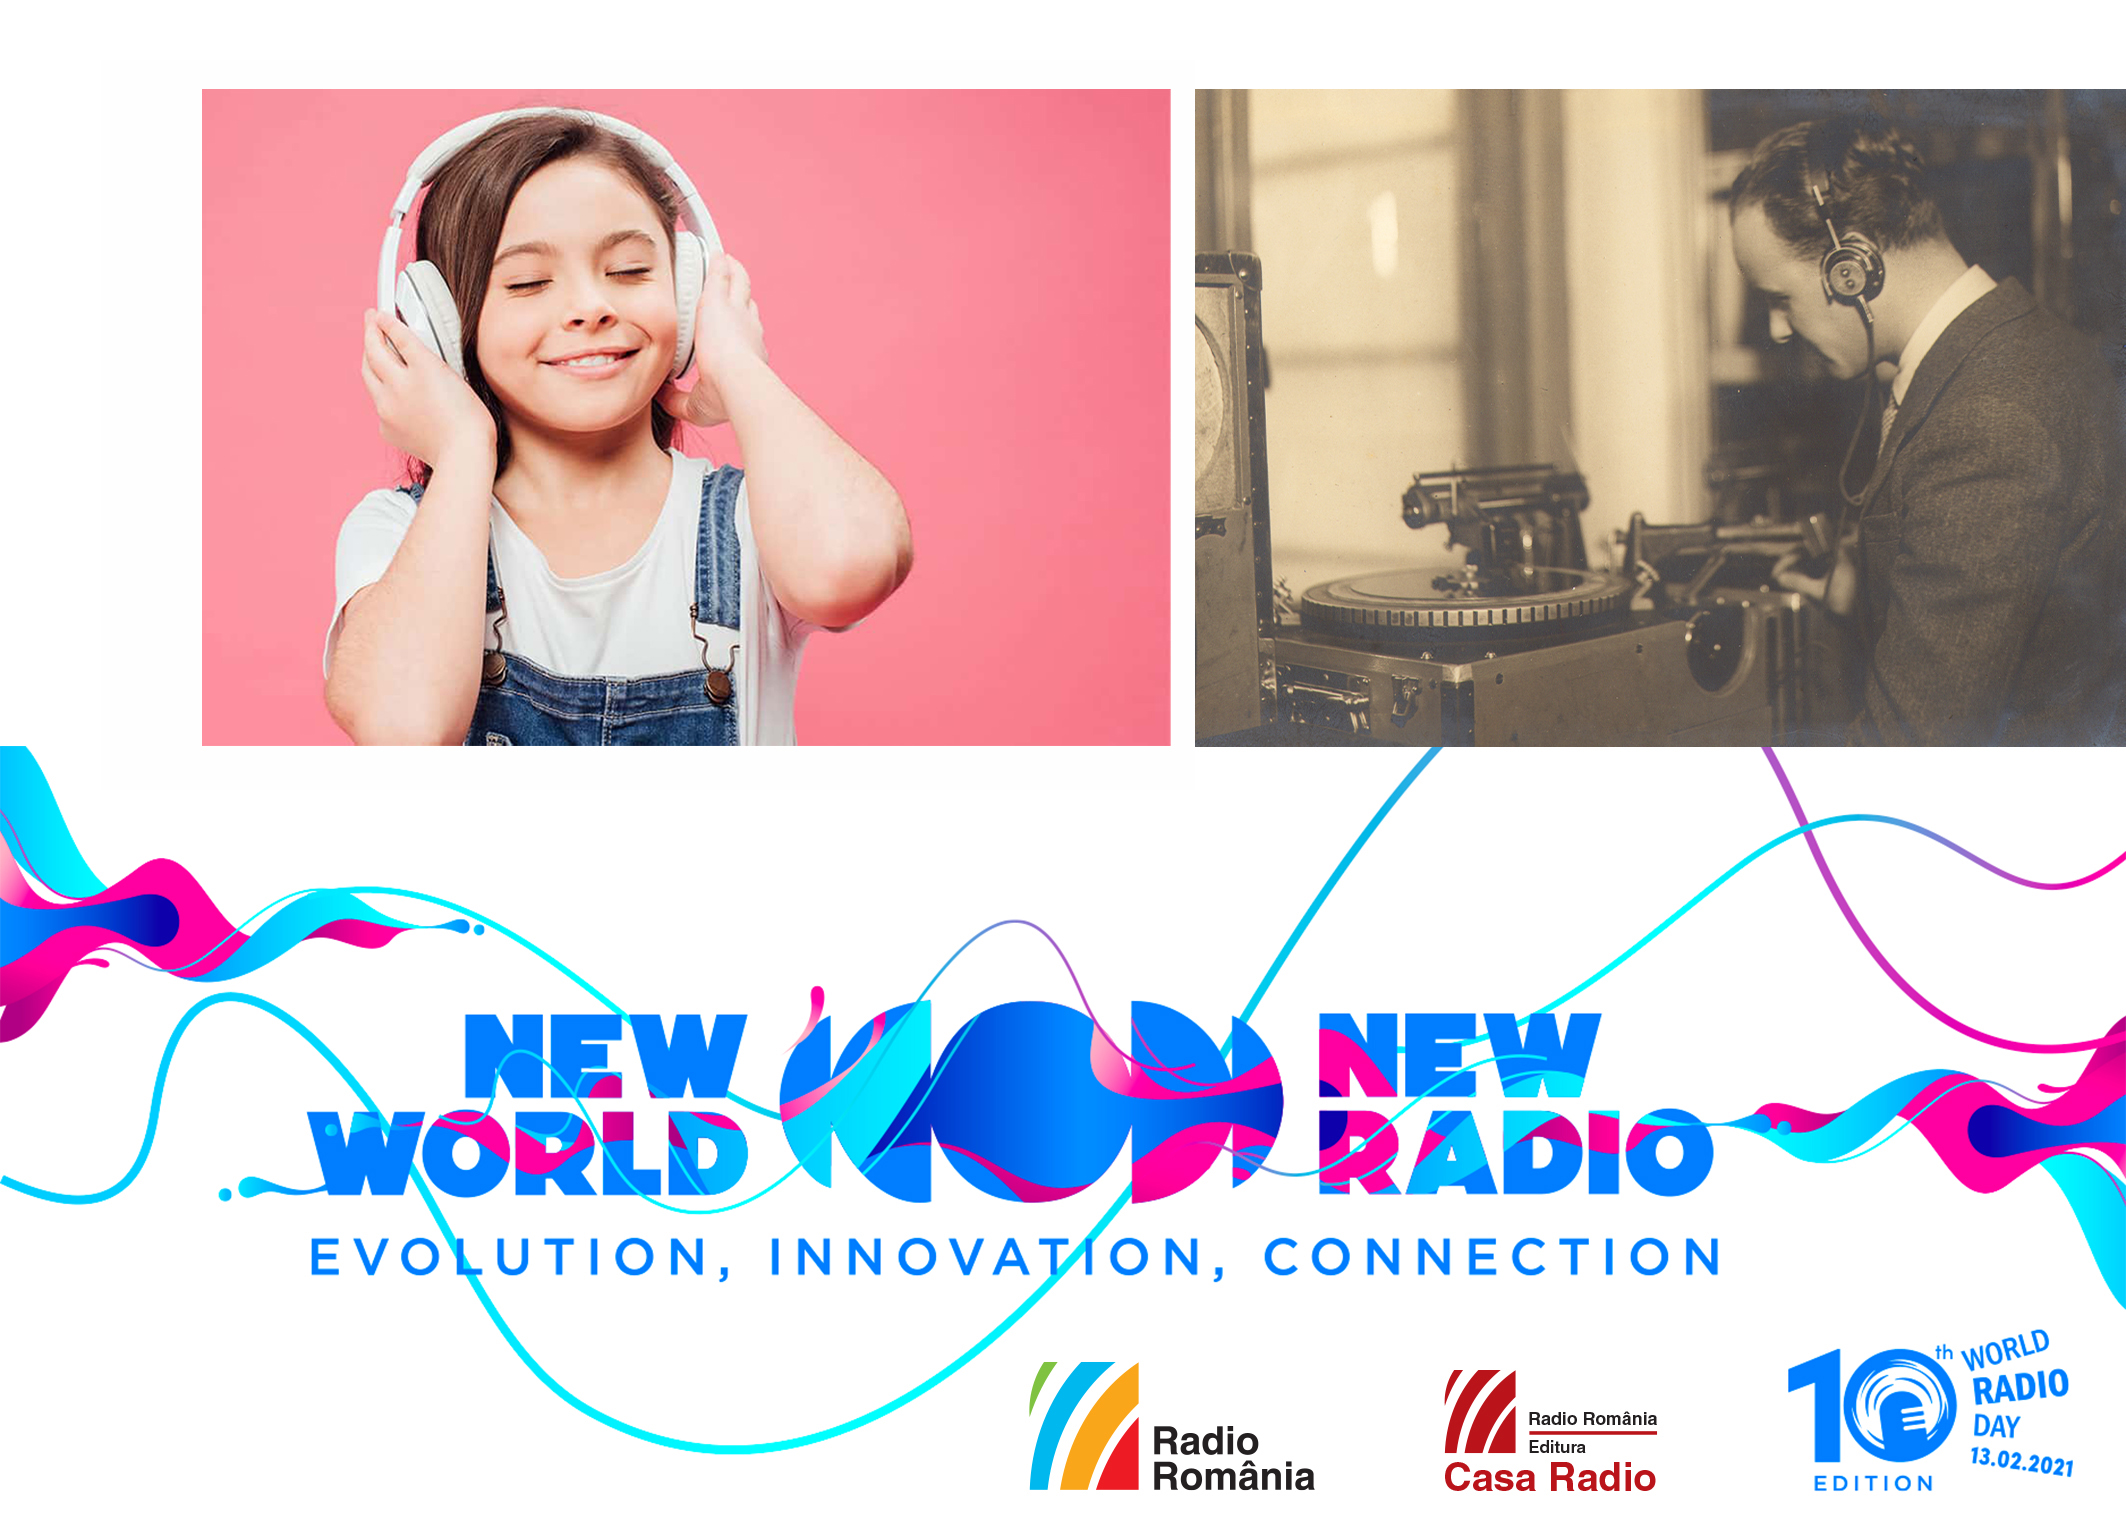 Editura Casa Radio celebrează Ziua Mondială a Radioului